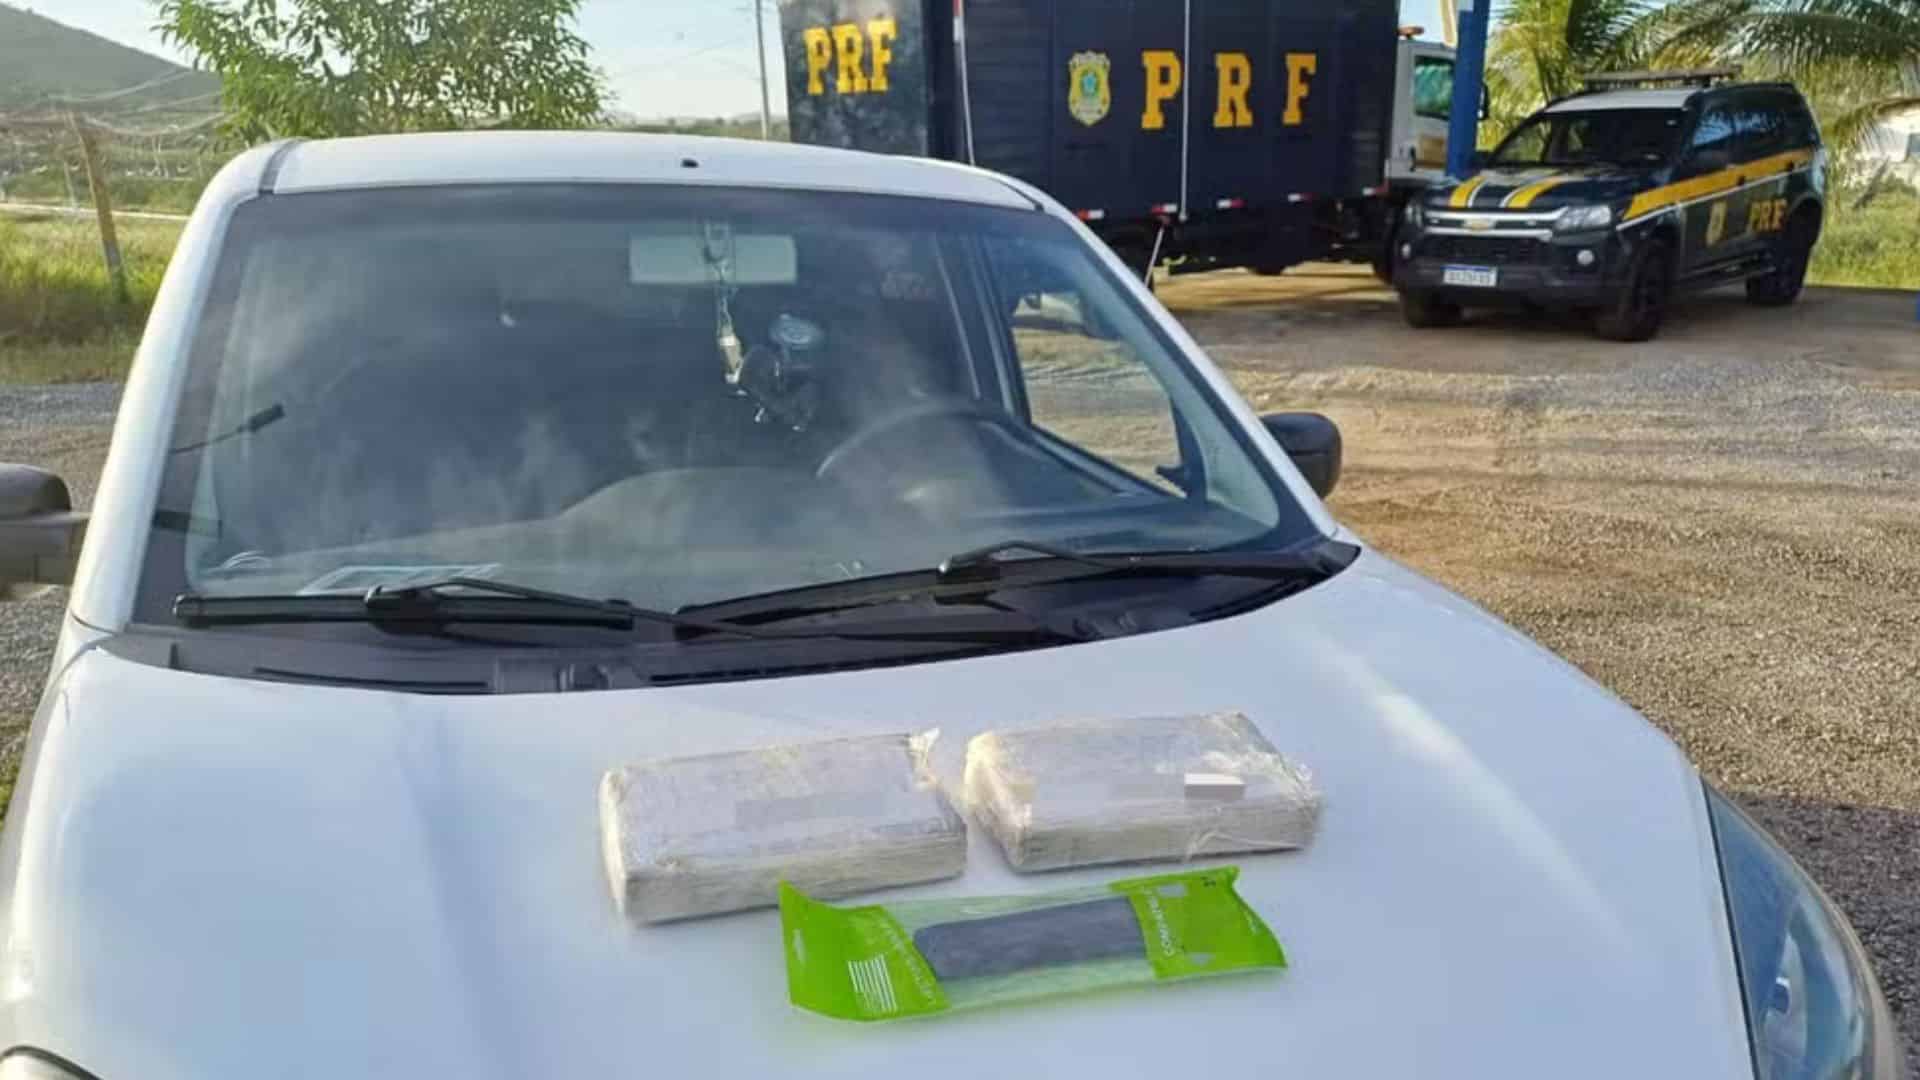 Cocaína é encontrada dentro de painel de carro em Serra Talhada. Foto: PRF/Reprodução